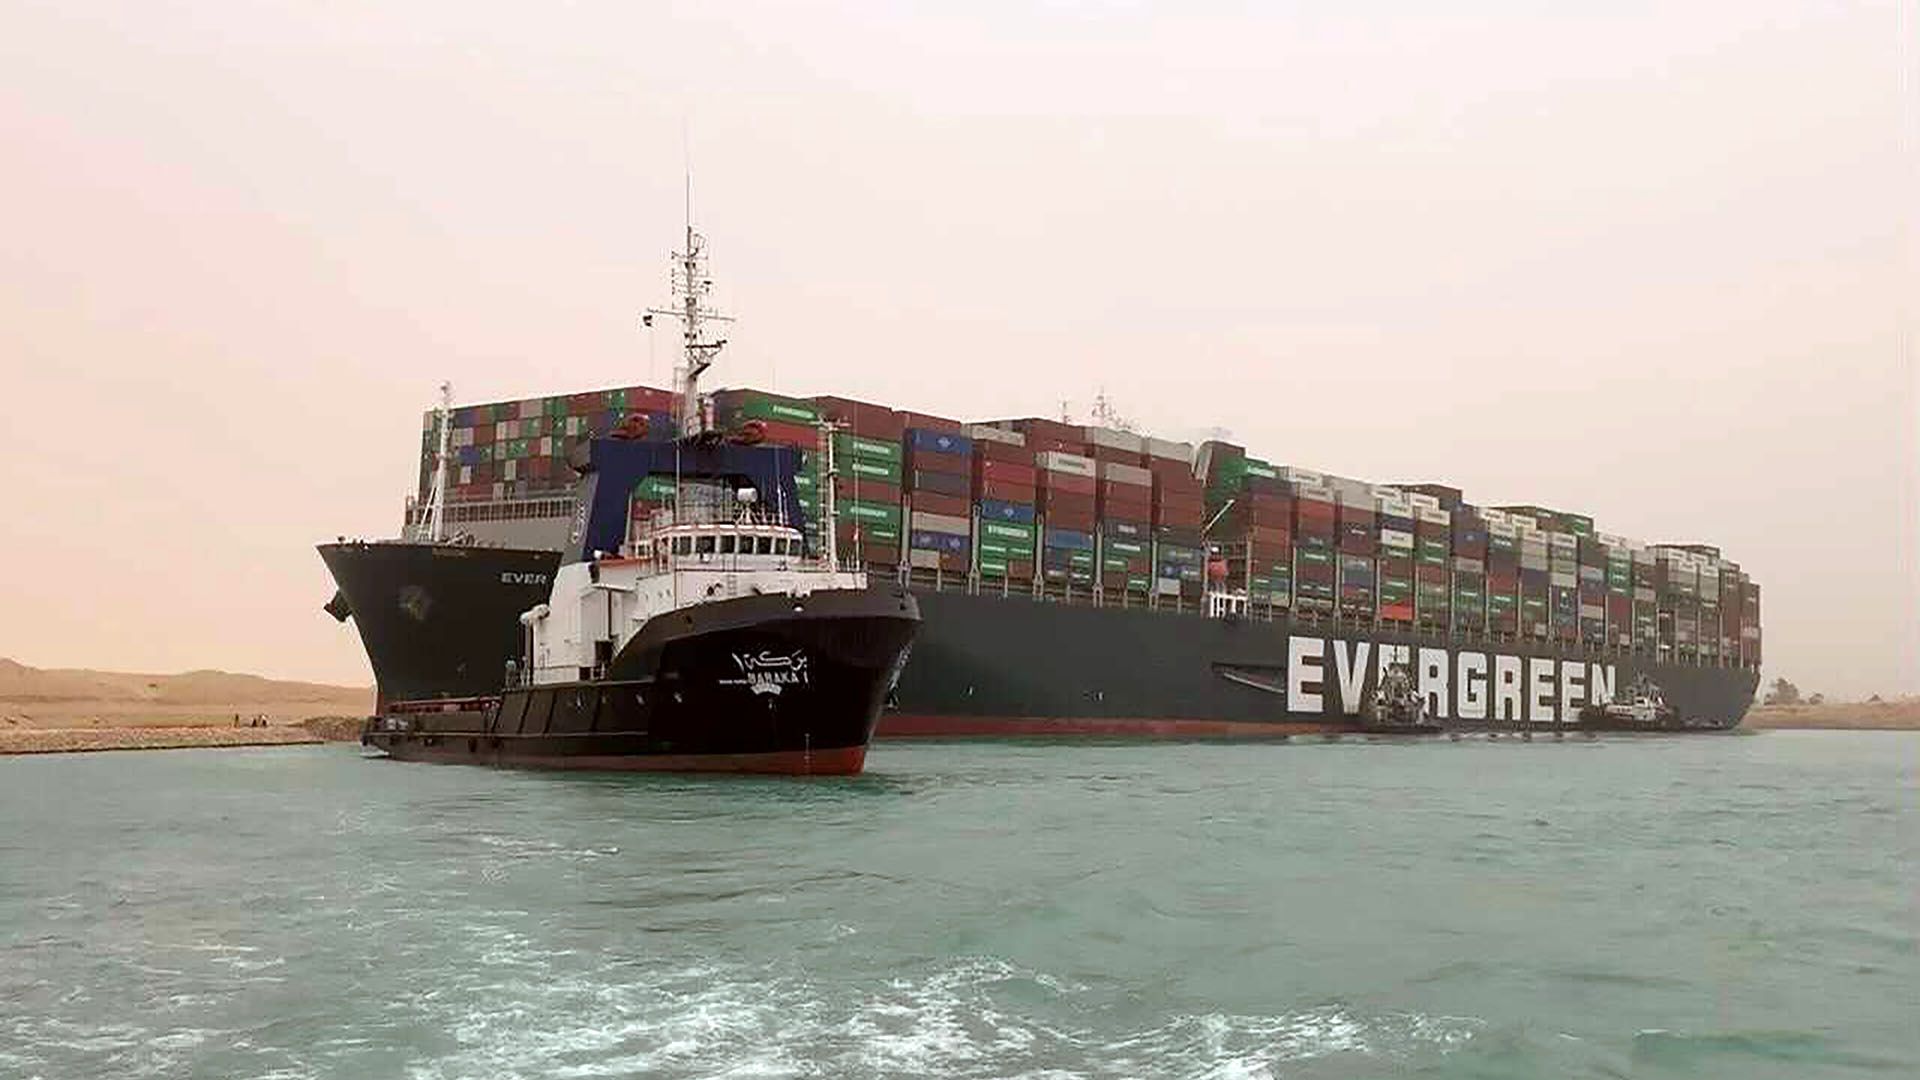 Un barco navega frente al enorme carguero MV Ever Green, luego de que giró de lado en el Canal de Suez de Egipto, bloqueando el tráfico en un vía navegable Este-Oeste crucial para el transporte marítimo mundial (Autoridad del Canal de Suez vía AP)